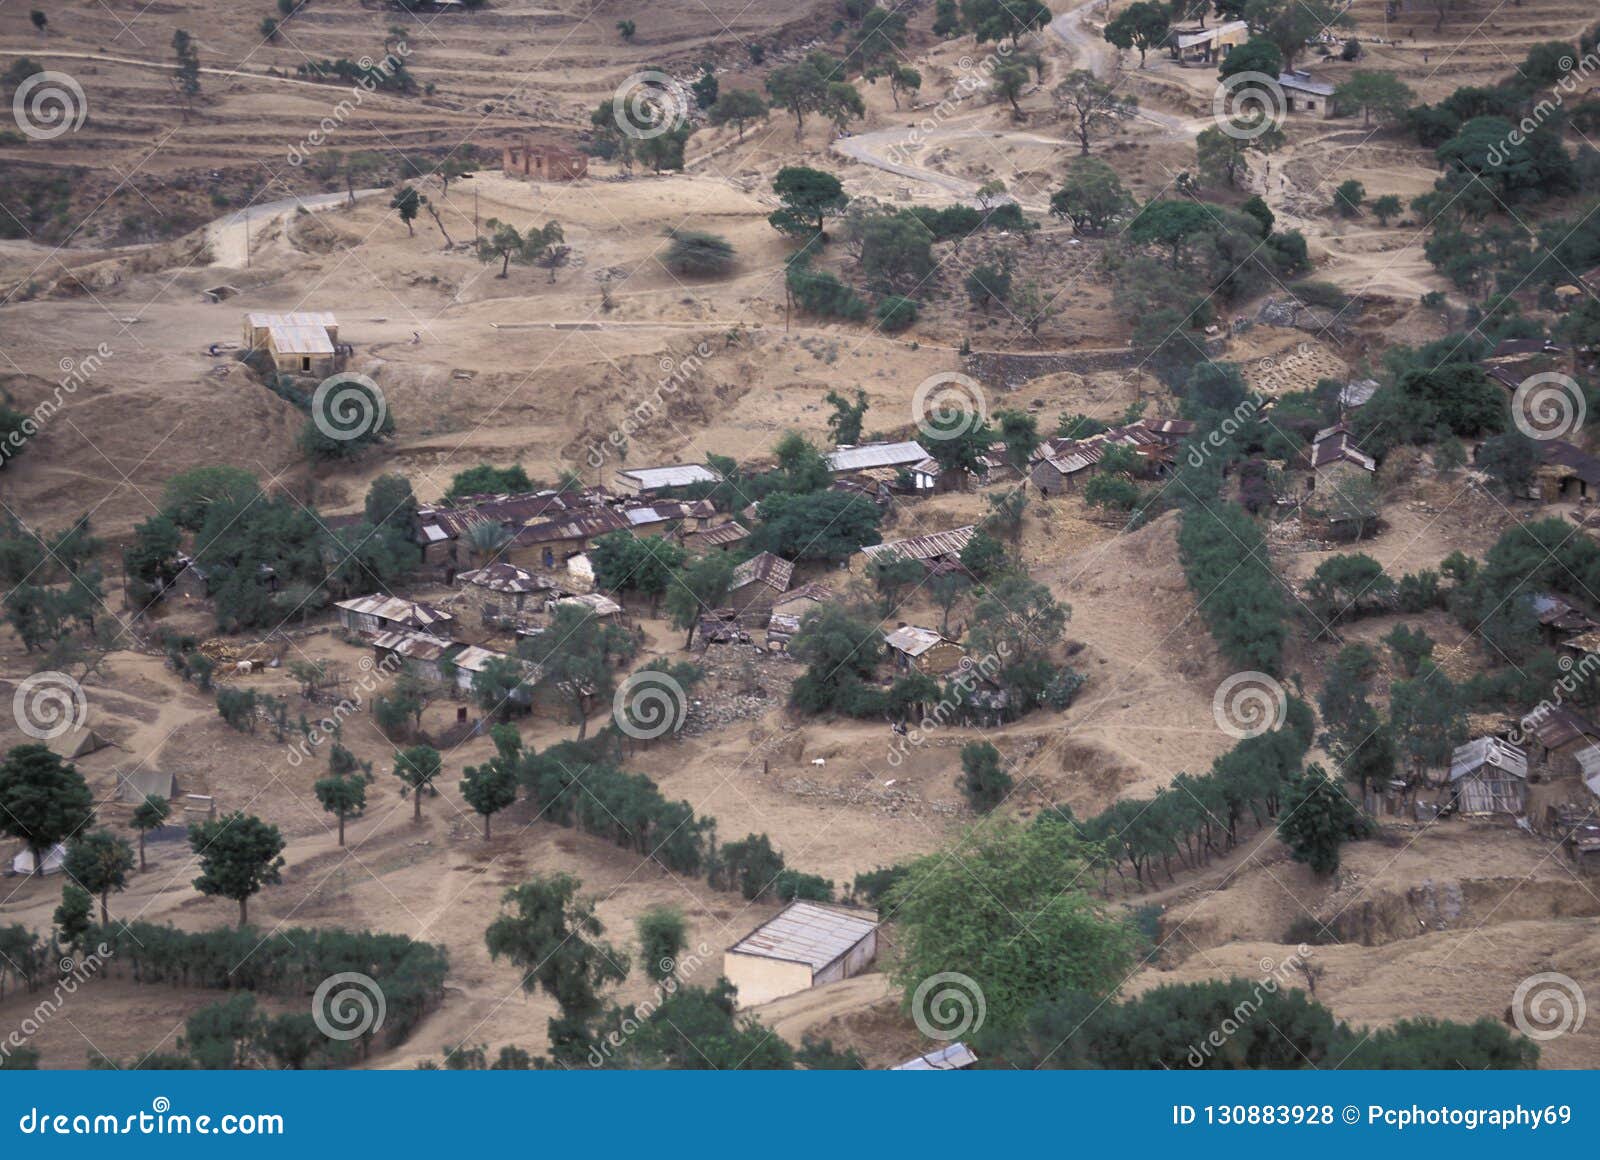 small village in eritrea